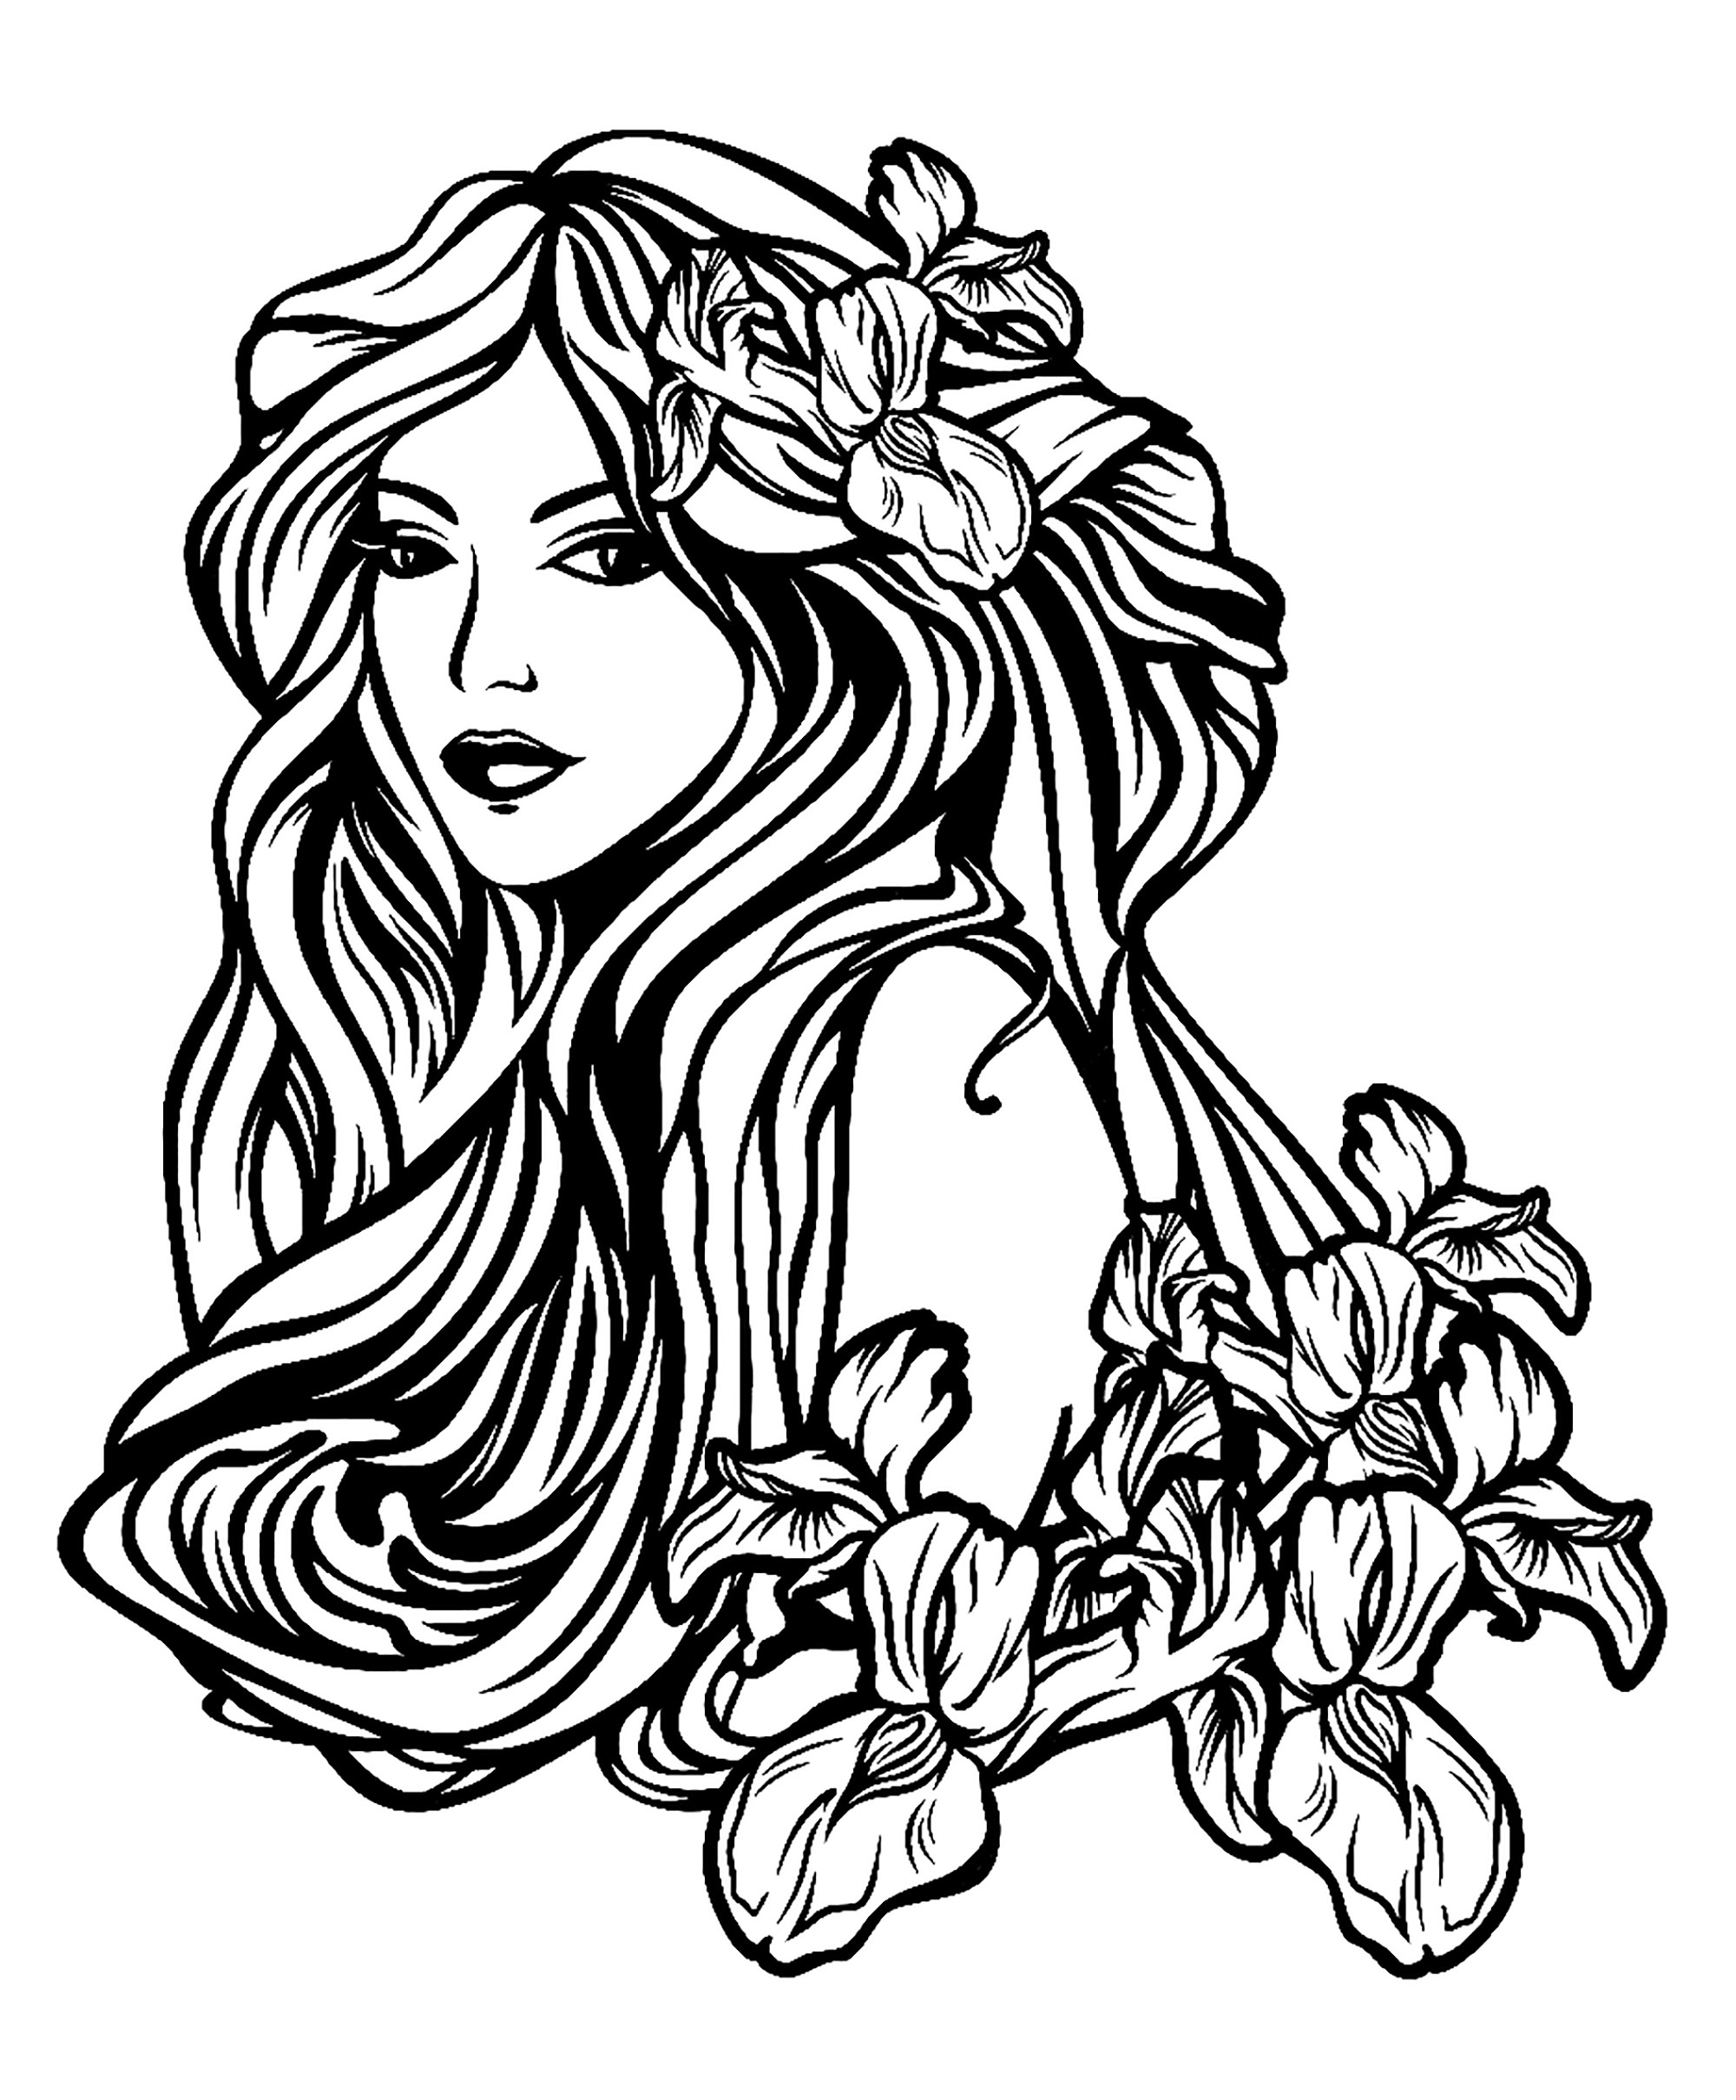 Schöne Frau mit langen Haaren zwischen Irisblüten - Jugendstil, perfekt für ein Tattoo, Künstler : Svetlana Alyuk   Quelle : 123rf